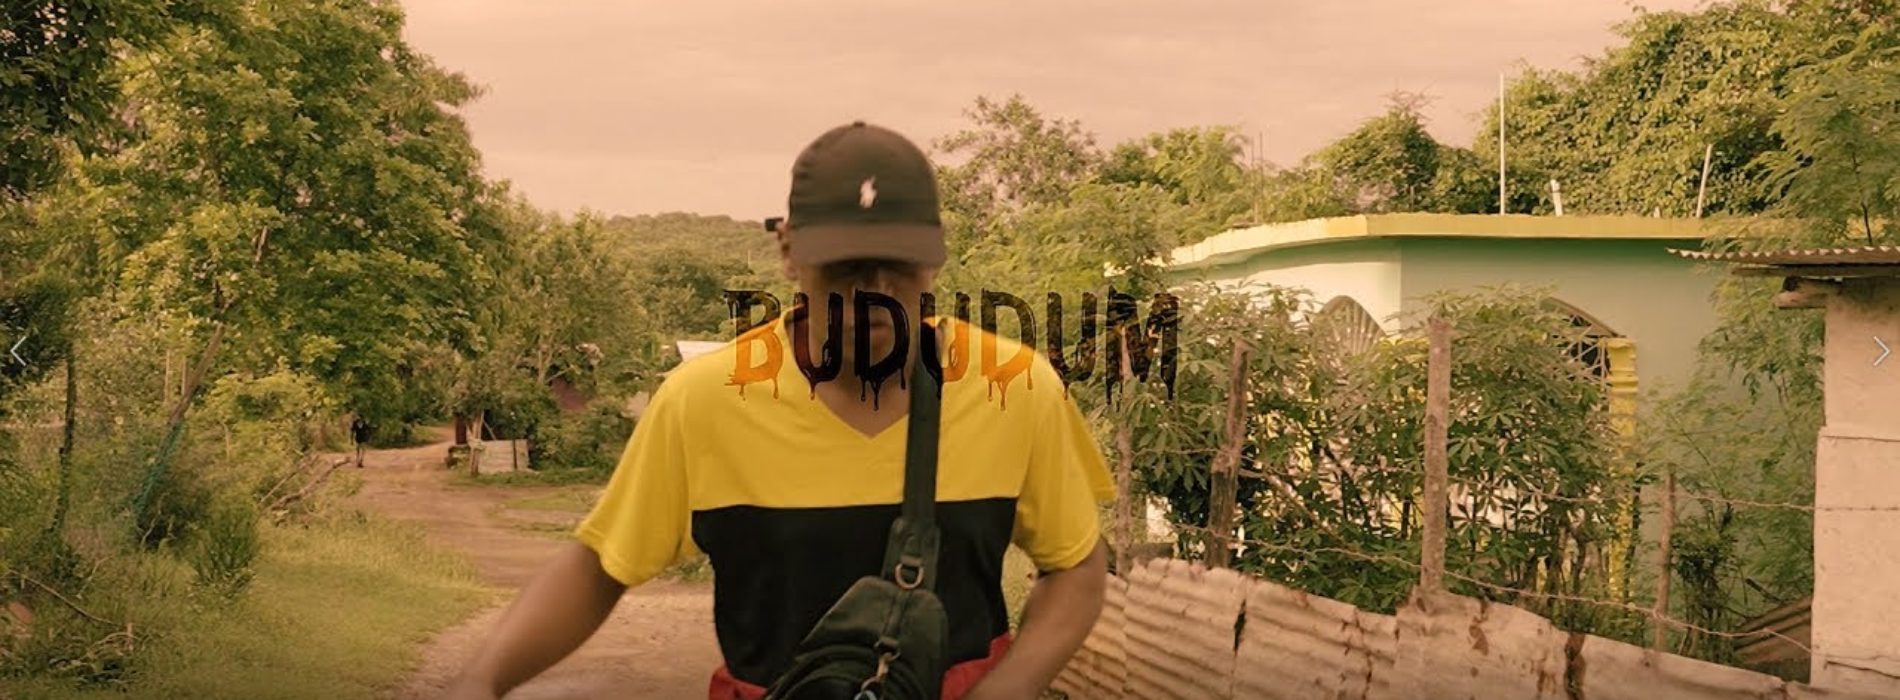 Vybz Kartel – Bududum (Official Music Video) – Décembre 2020